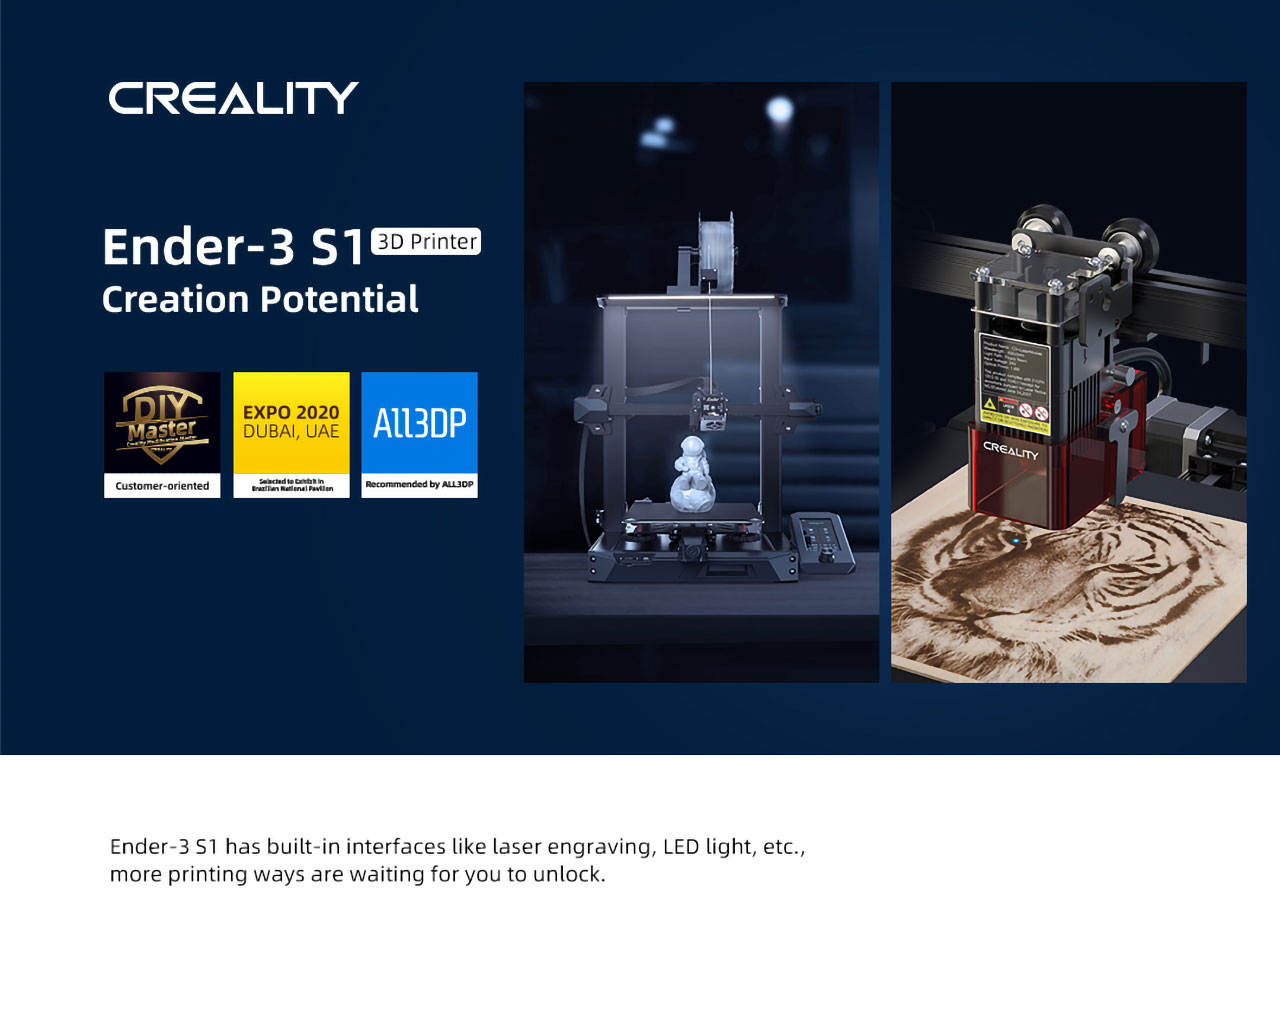 Ulaş Utku Bozdoğan: Uygun Fiyata Yüksek Kaliteli 3D Yazıcı: Creality Ender-3 S1 13